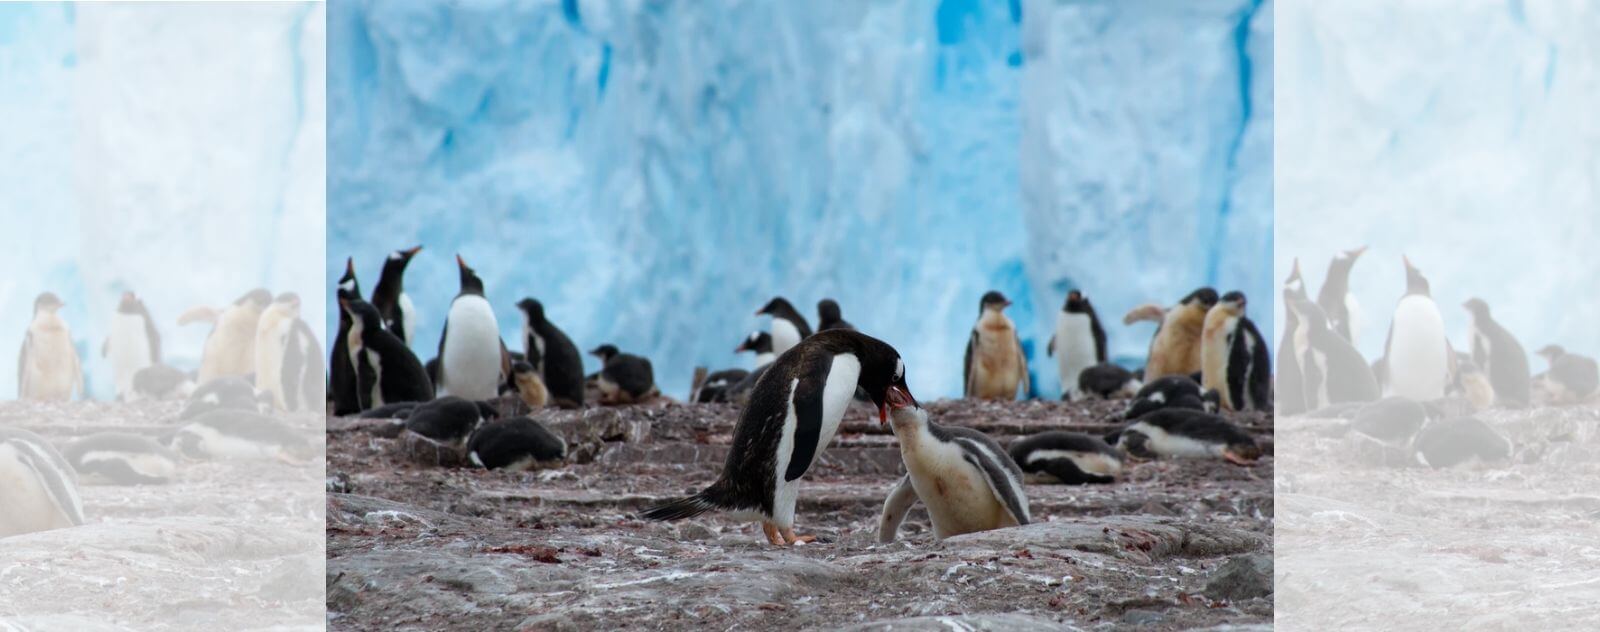 Pingüino alimentando a sus polluelos en su colonia sobre hielo y hielo